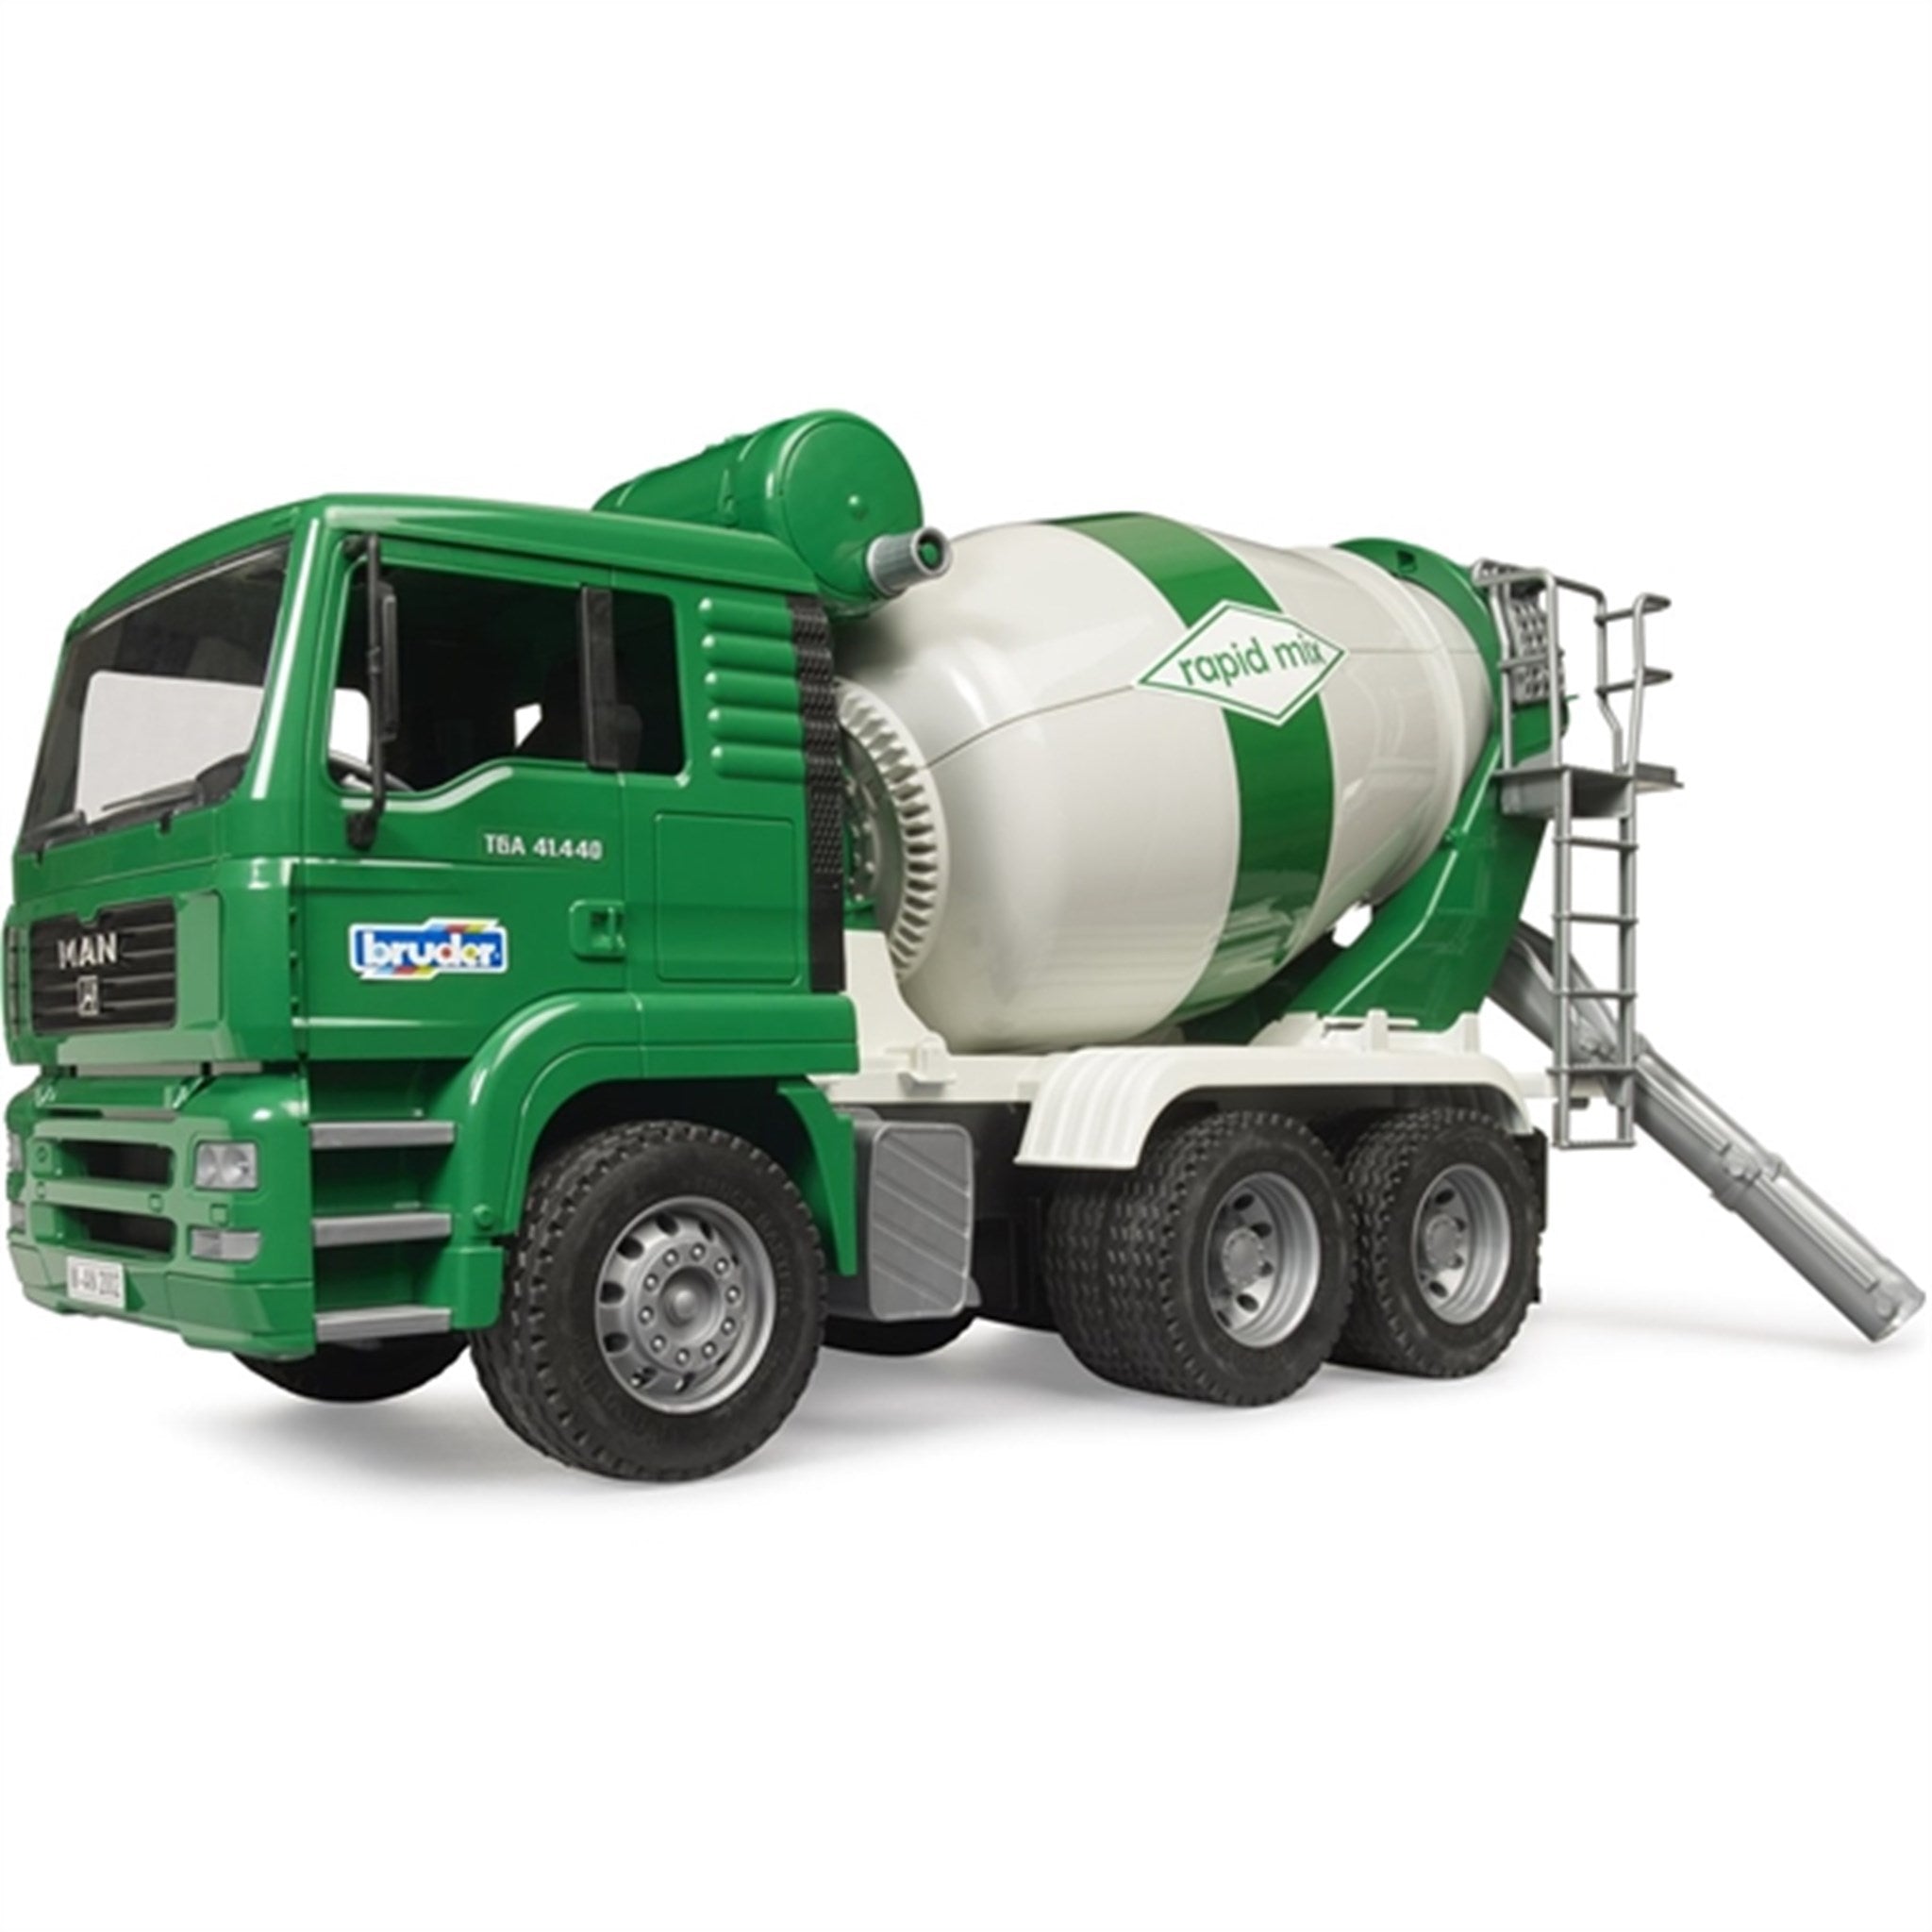 Bruder MAN TGA Cement Mixer Truck Rapid Mix 2